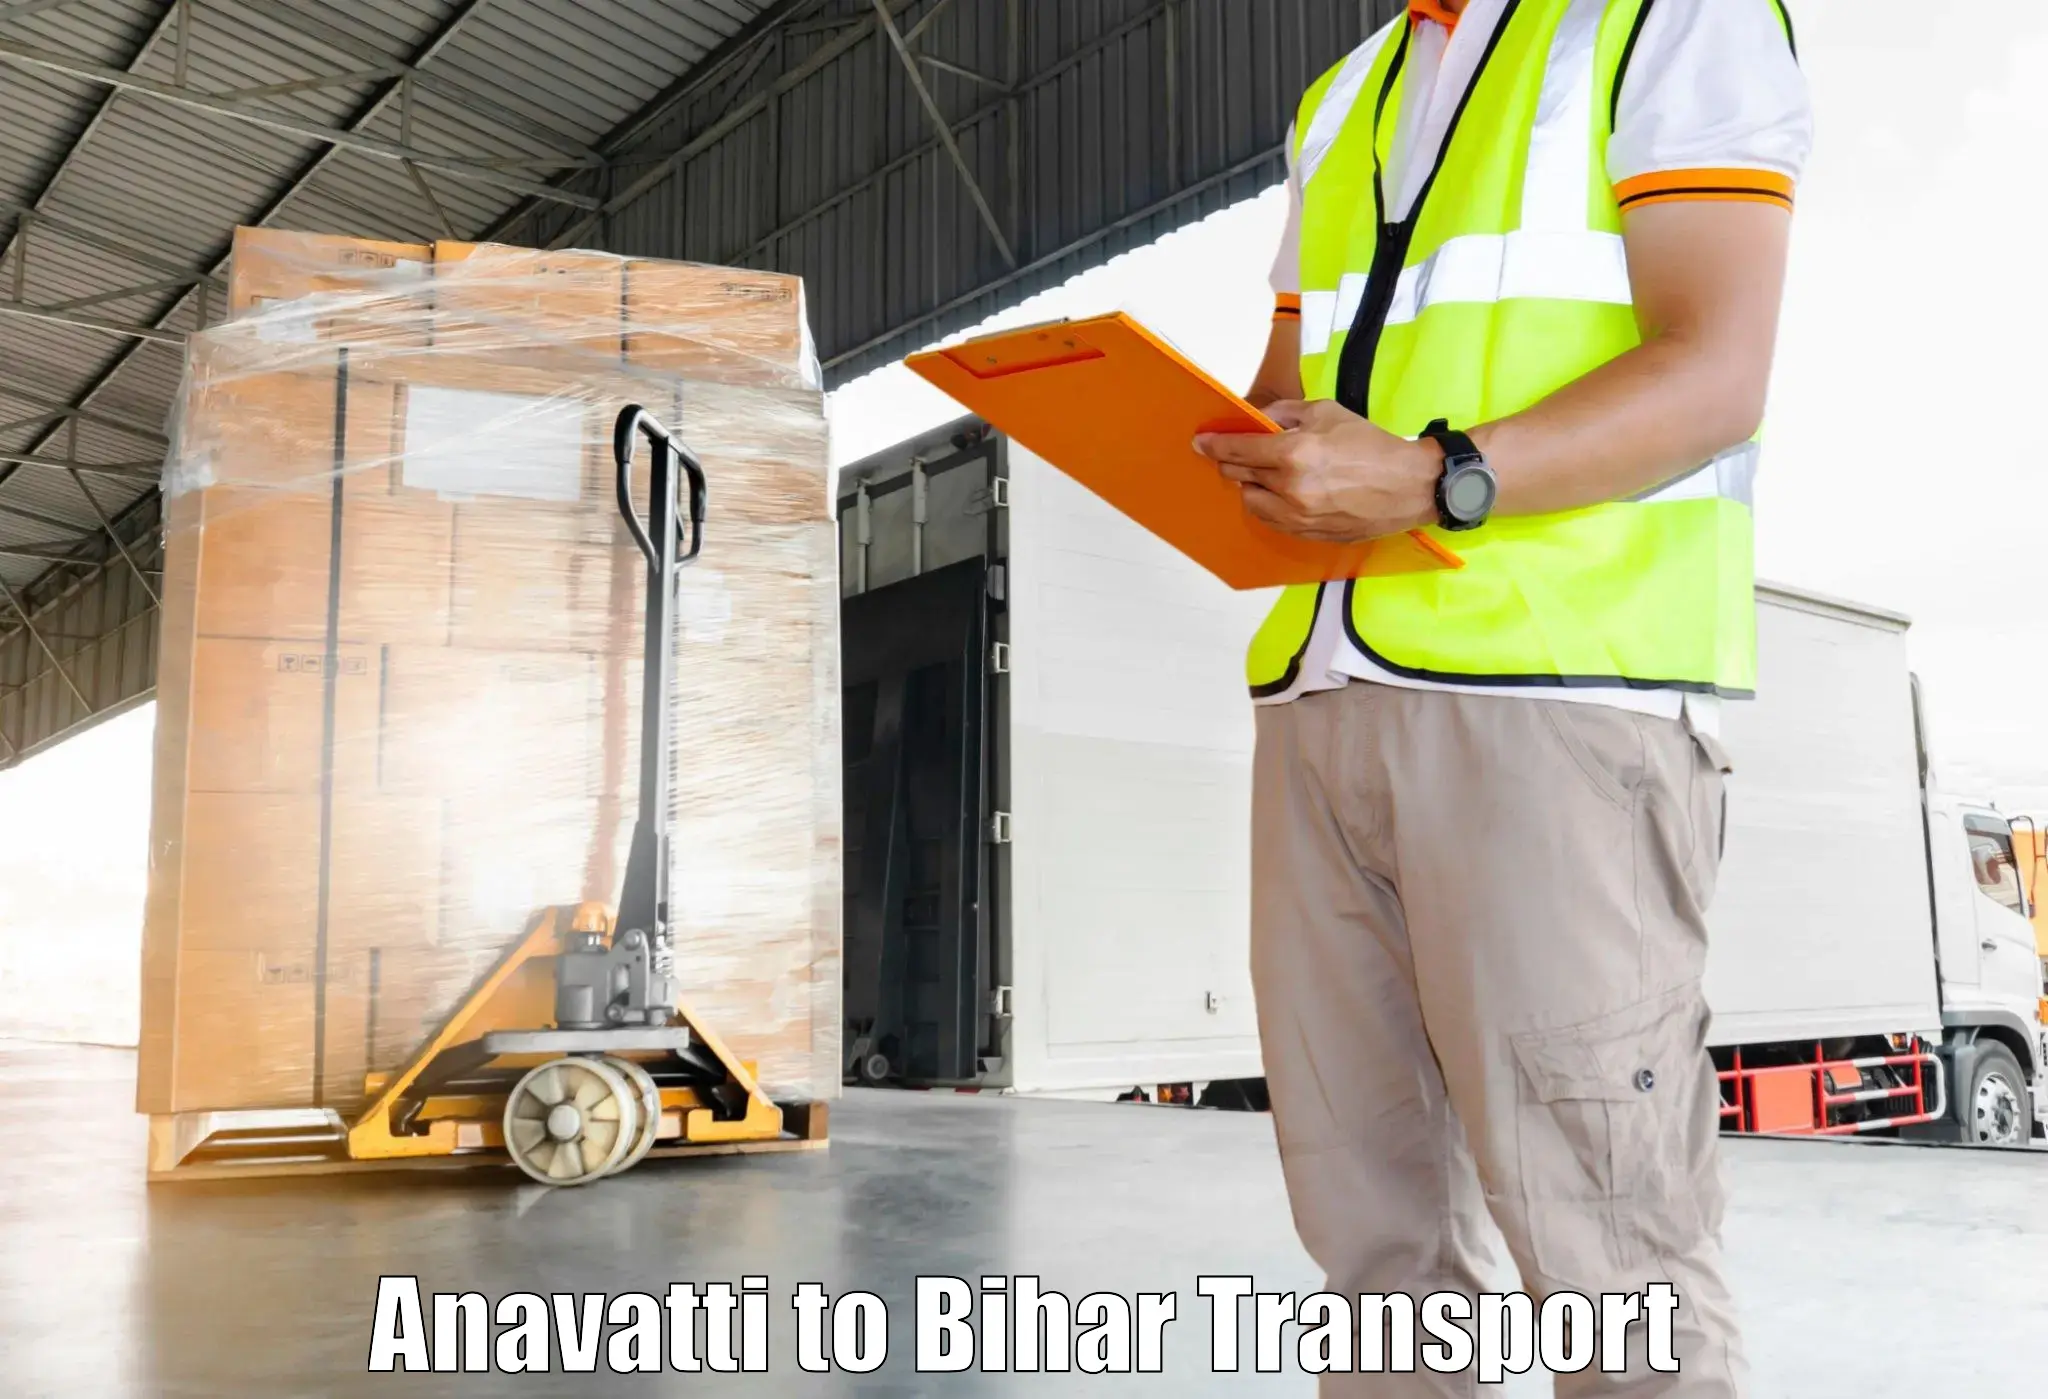 Shipping partner Anavatti to IIIT Bhagalpur